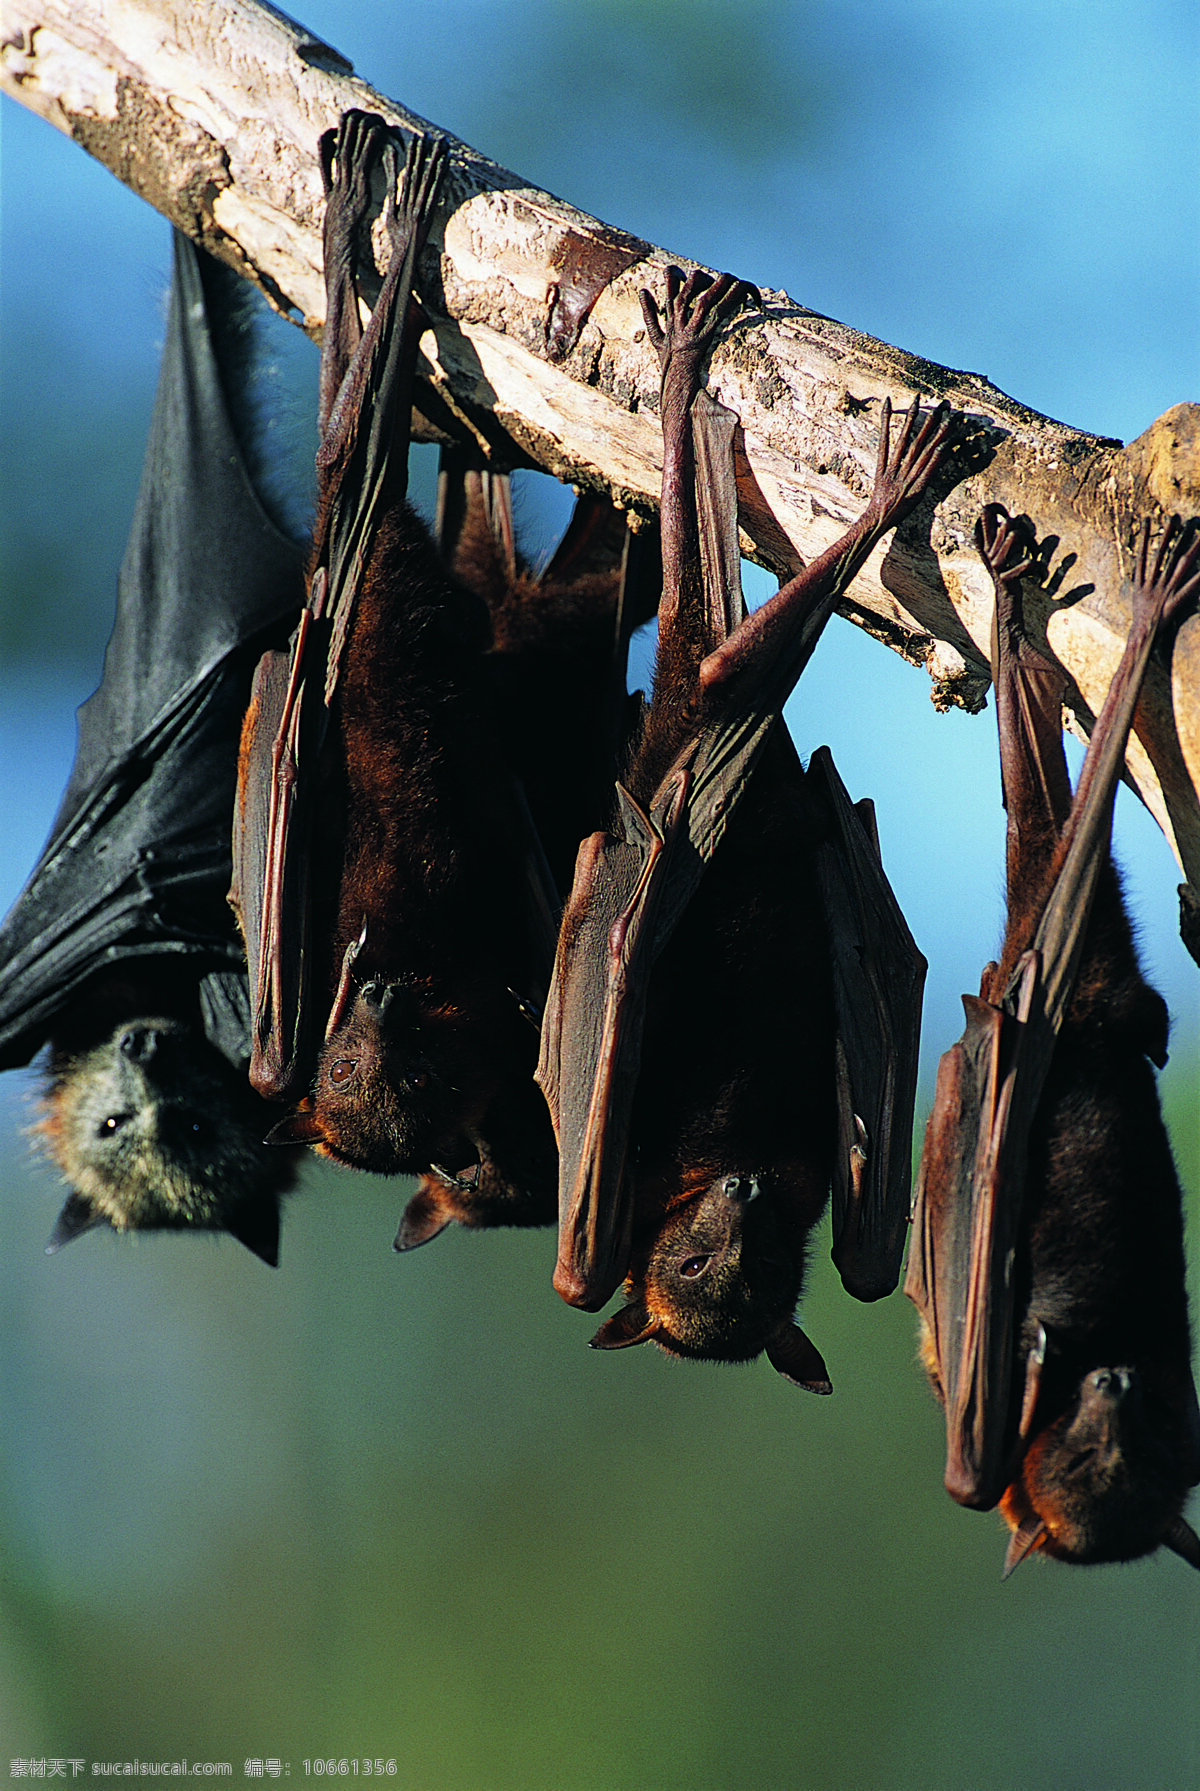 蝙蝠 倒挂蝙蝠 黑蝙蝠 多只蝙蝠 蝙蝠群 鸟 鸟之百科 鸟类 动物世界 图素动植物类 生物世界